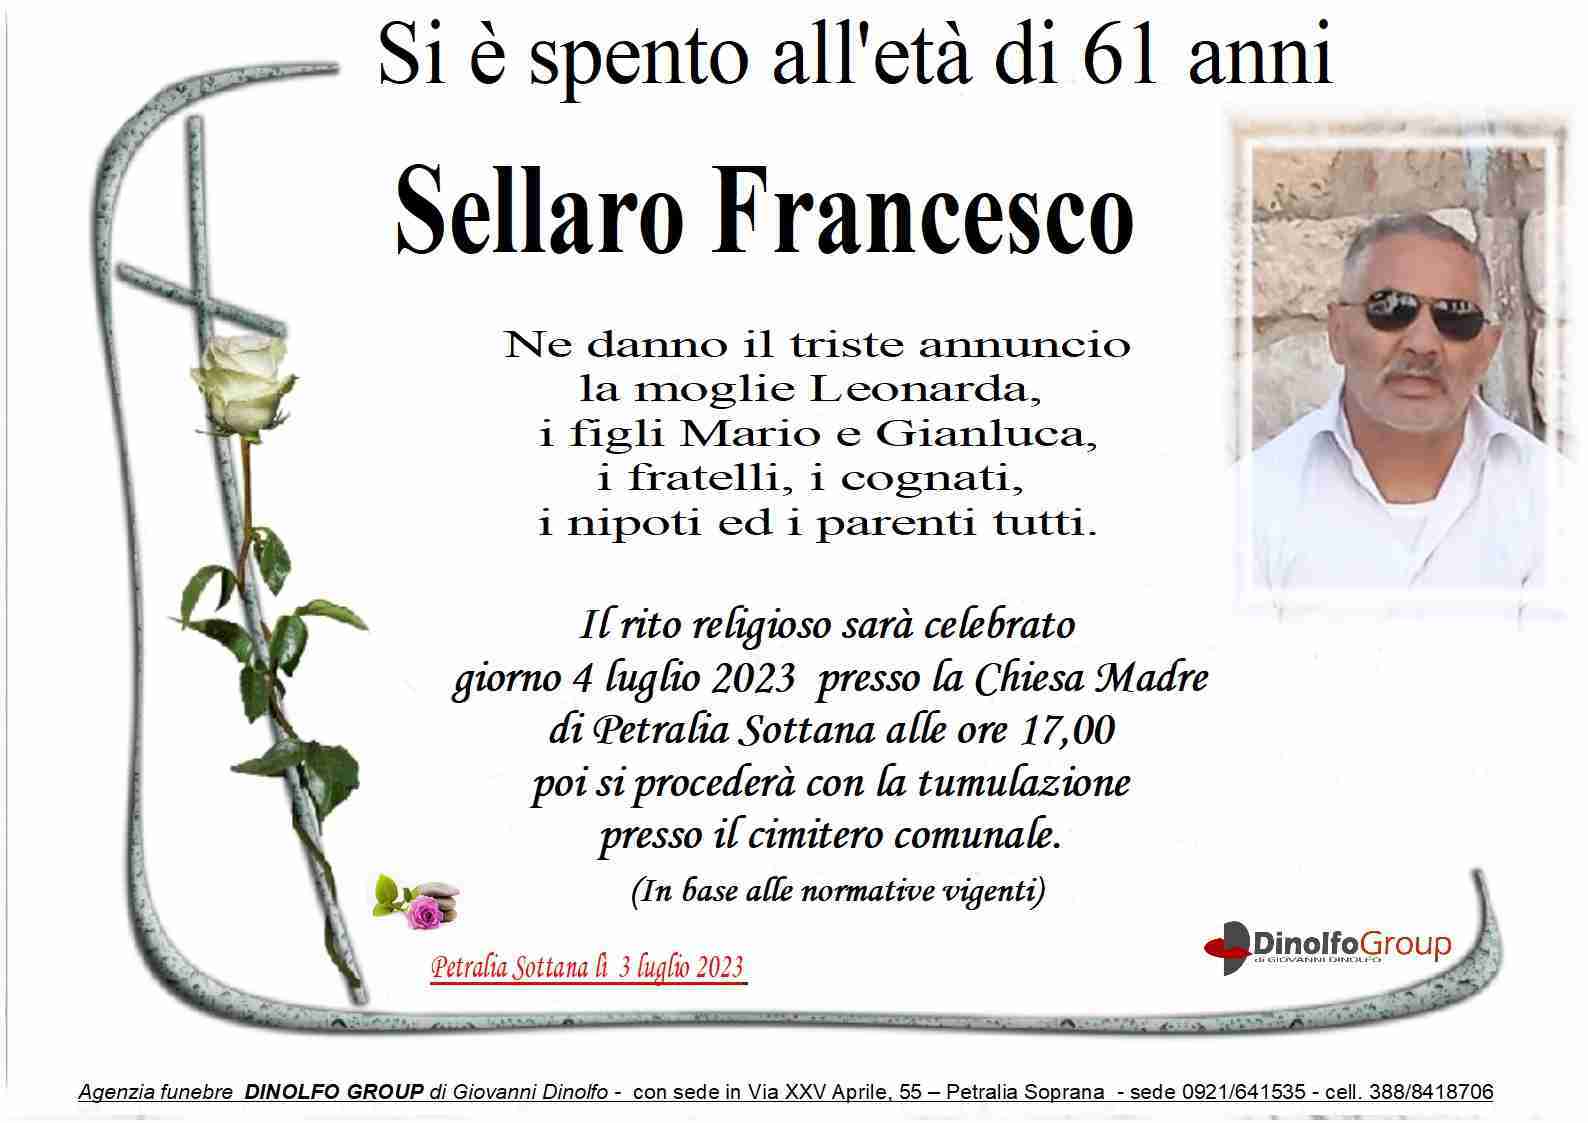 Francesco Sellaro